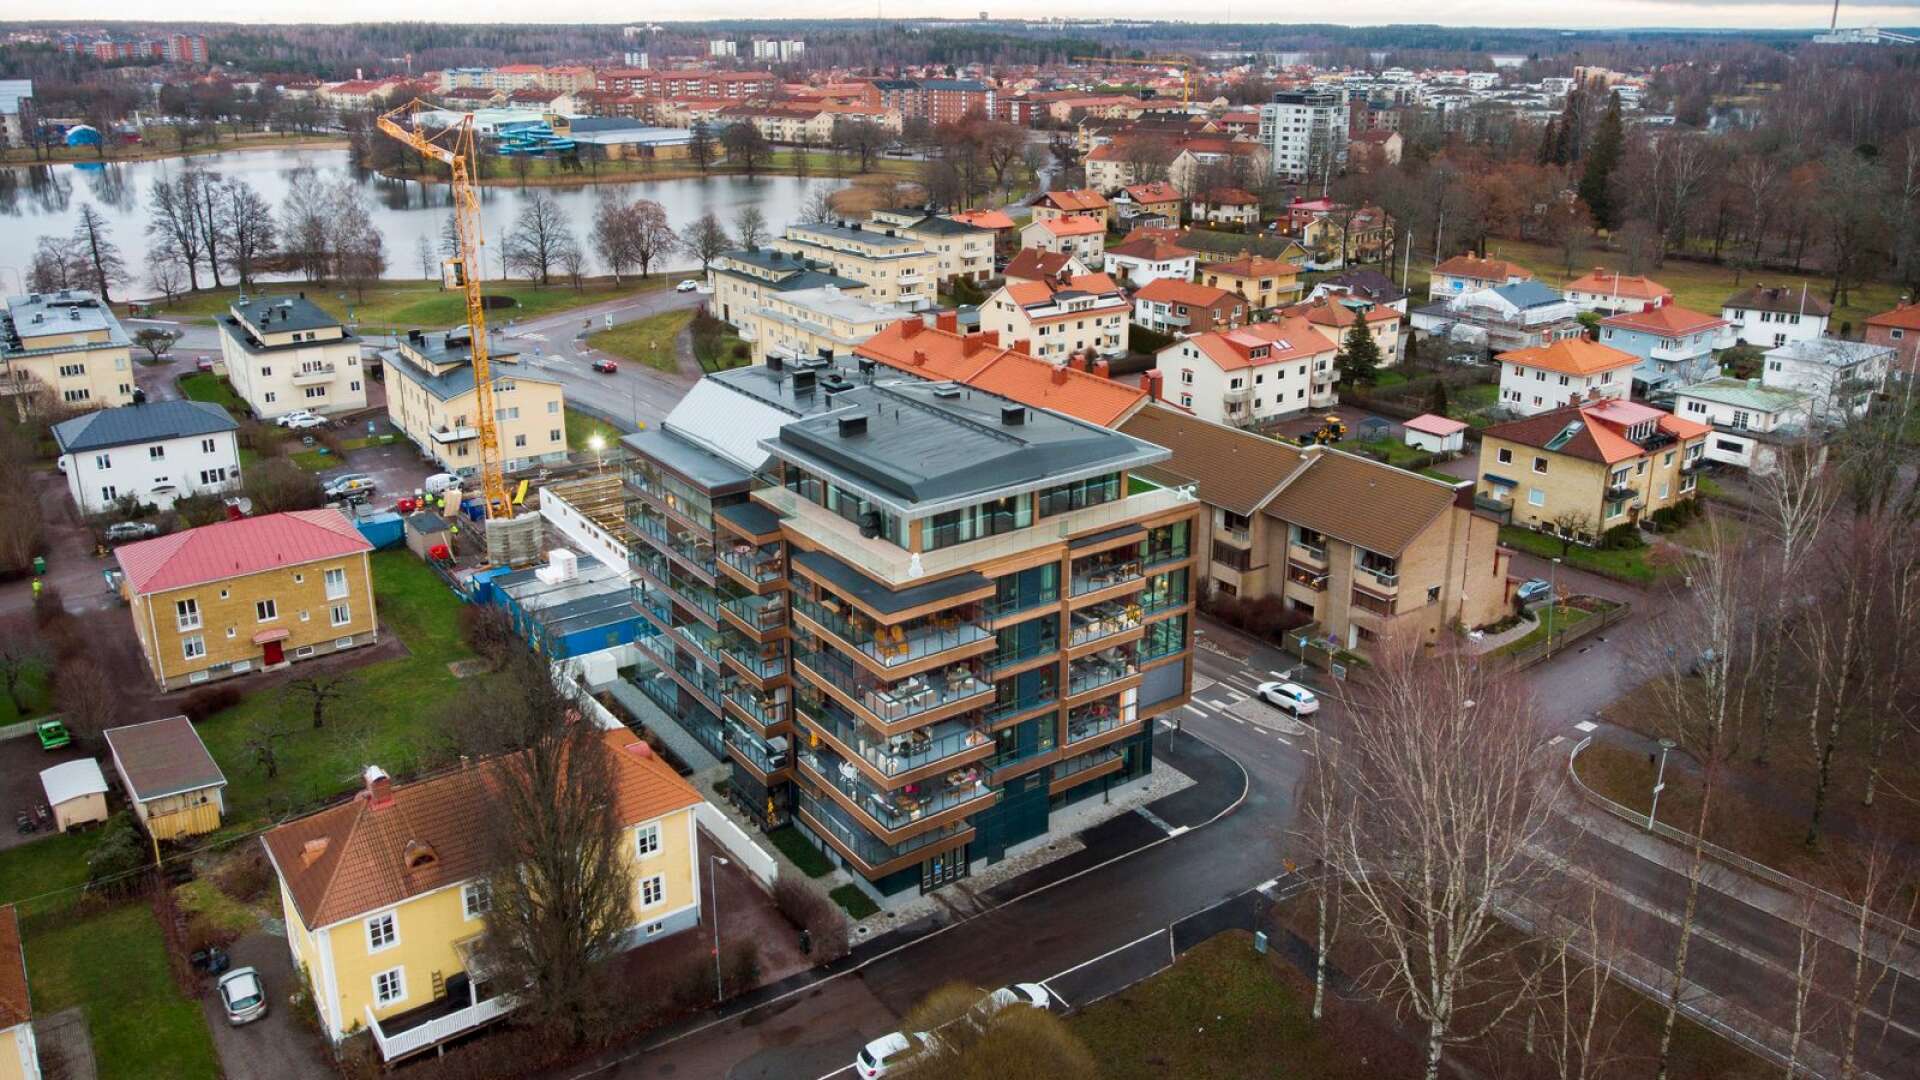 Bostadsbyggandet är fortfarande högt i Karlstad, men fastighetsägandet koncentreras allt mer till större bolag. Här ses Karlstadhus nybygge vid korsningen Brogatan/Bjurbäcksgatan i Karlstad samt KBAB:s bygge på tomten intill.